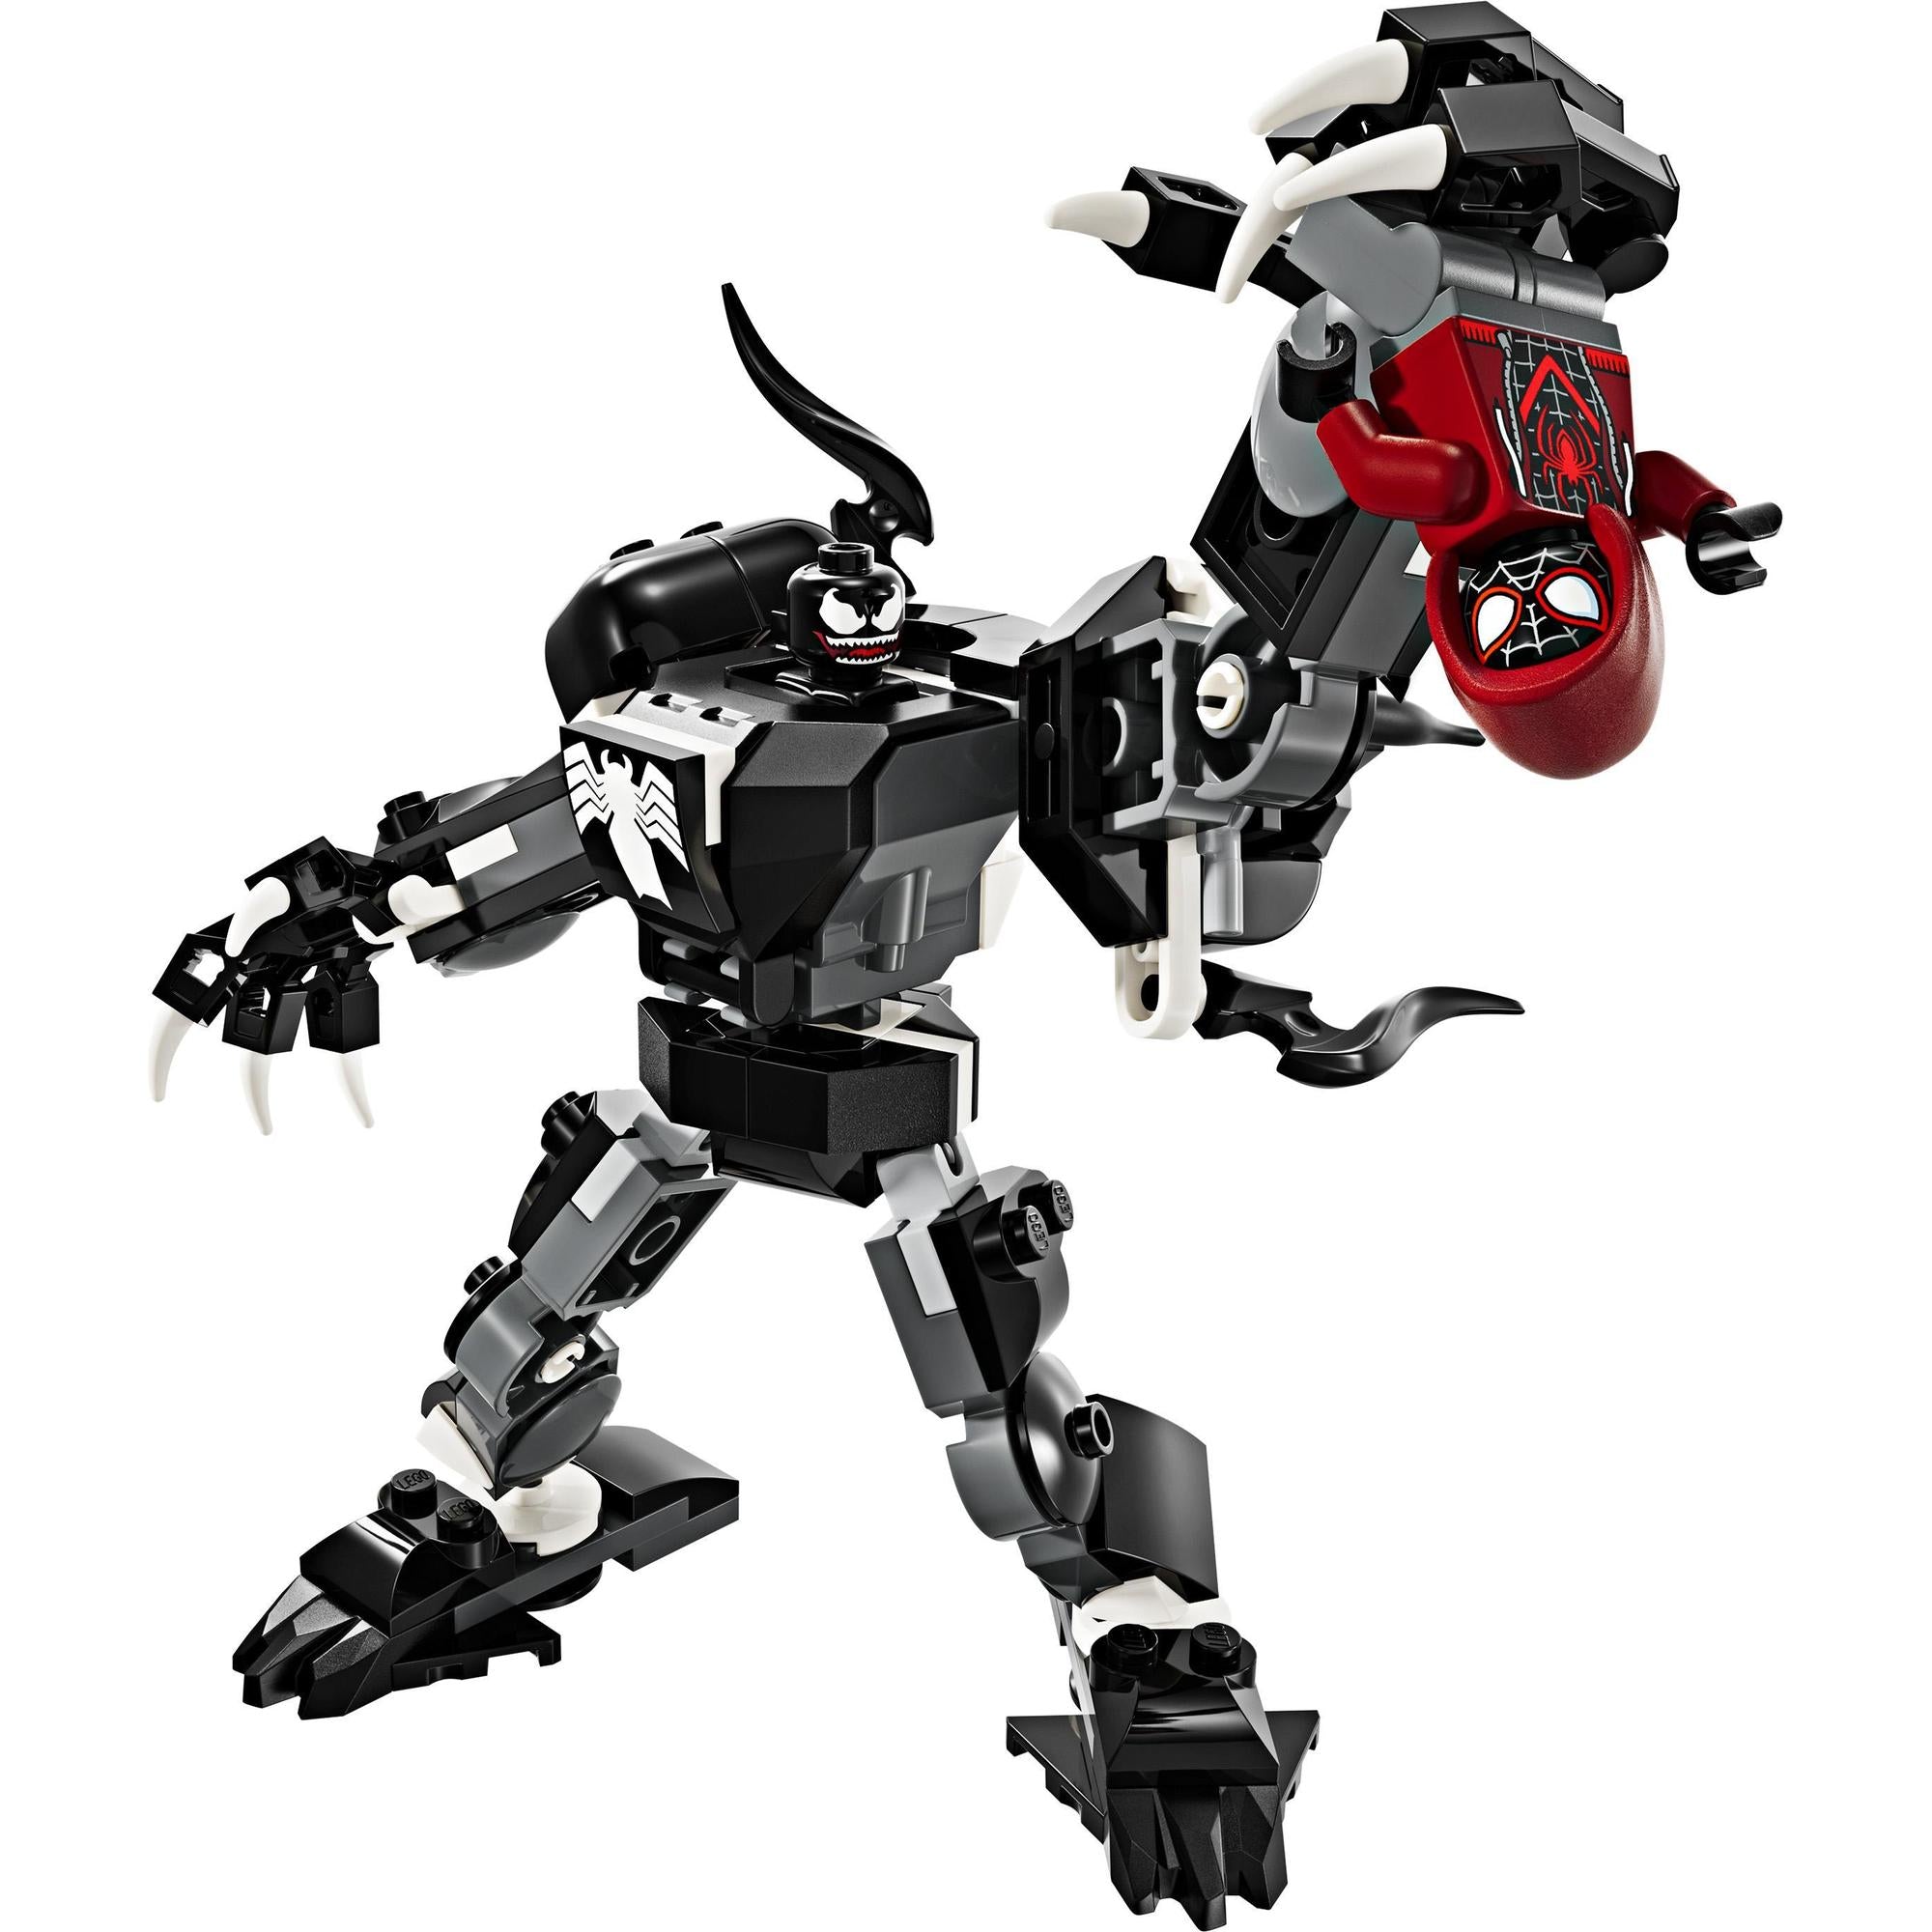 LEGO® | 76276 | Venom Mech vs. Miles Morales